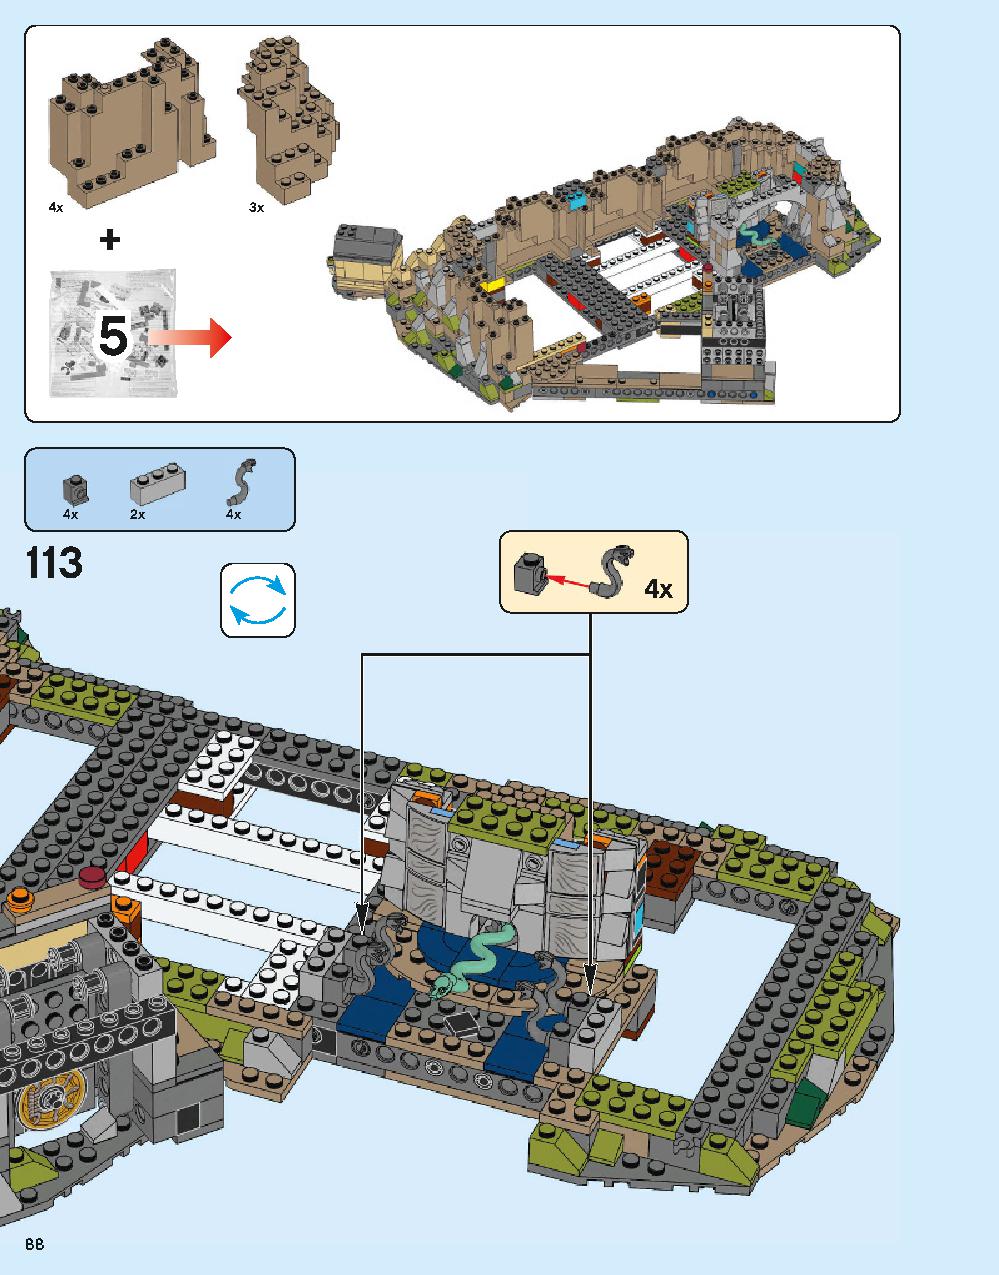 ホグワーツ城 71043 レゴの商品情報 レゴの説明書・組立方法 88 page